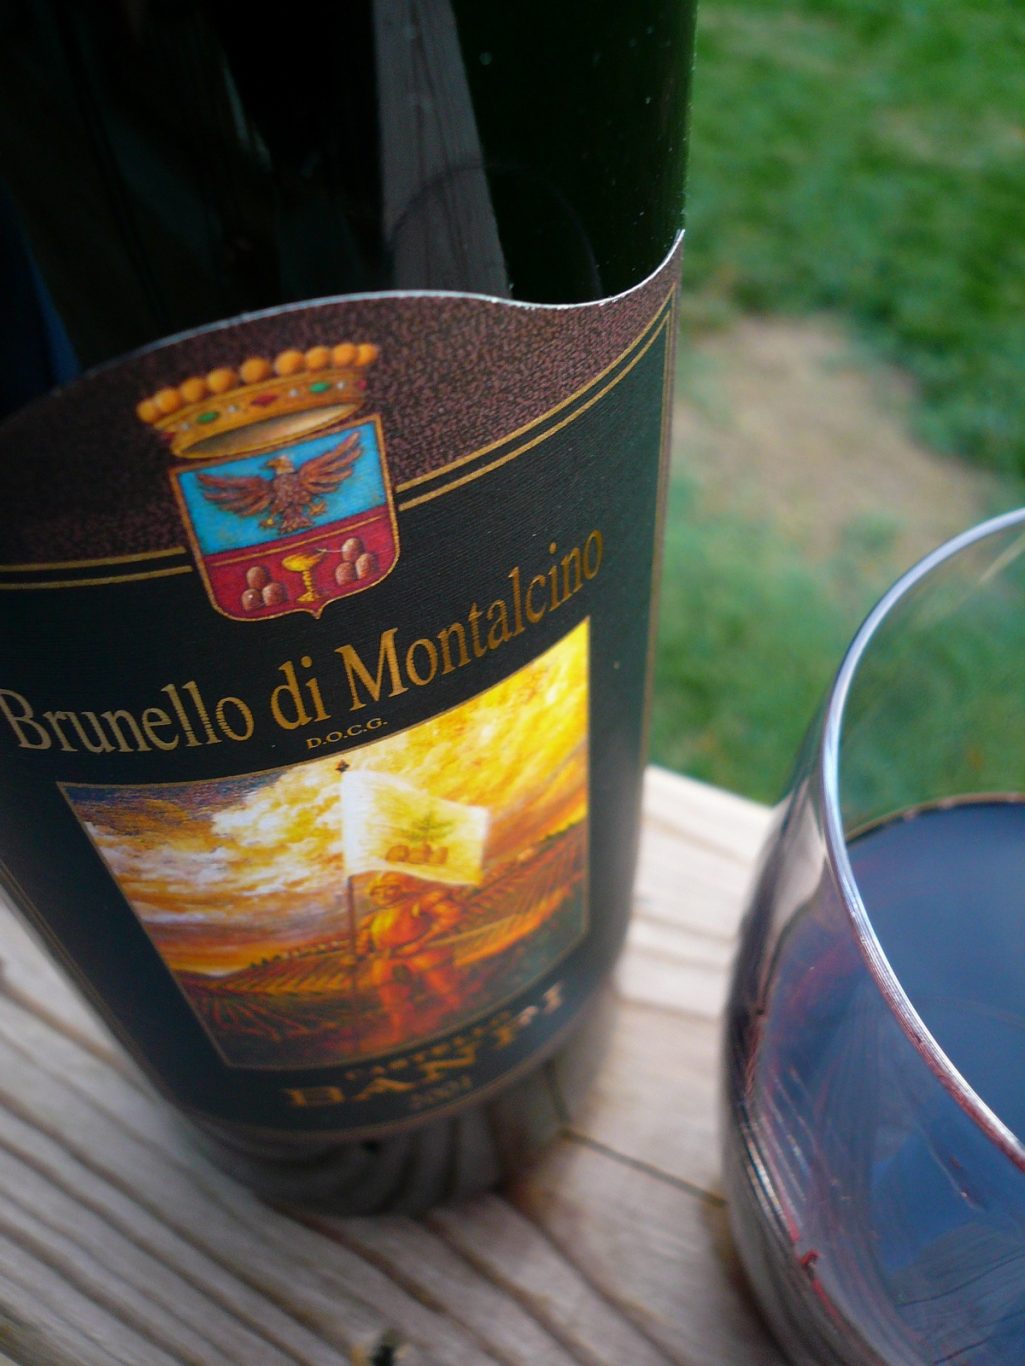 Brunello di montalcino wine